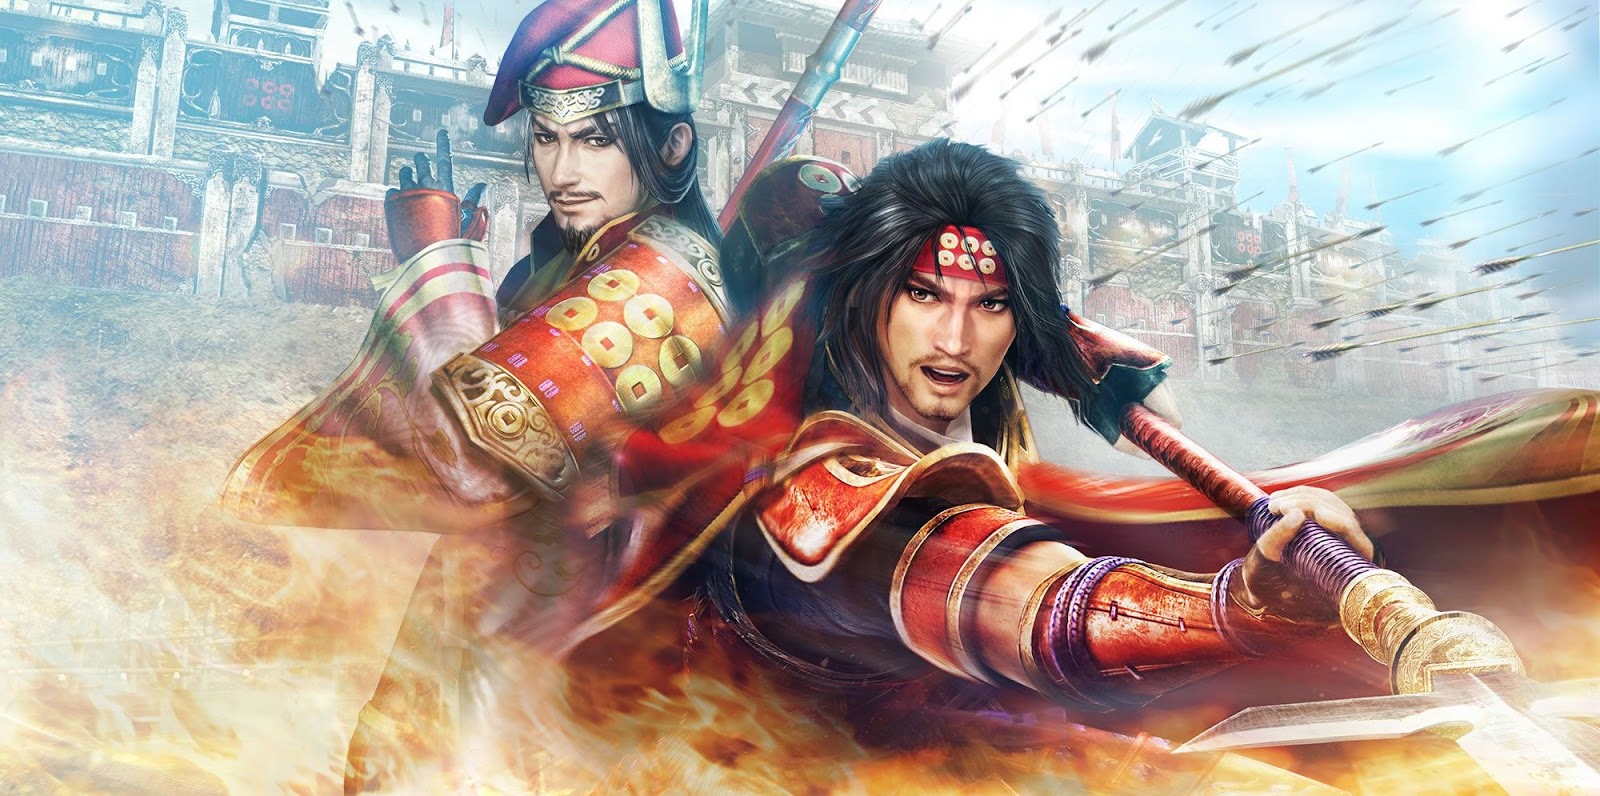 Samurai Warriors - Jogo Físico - Ação - 1-2 Jogadores